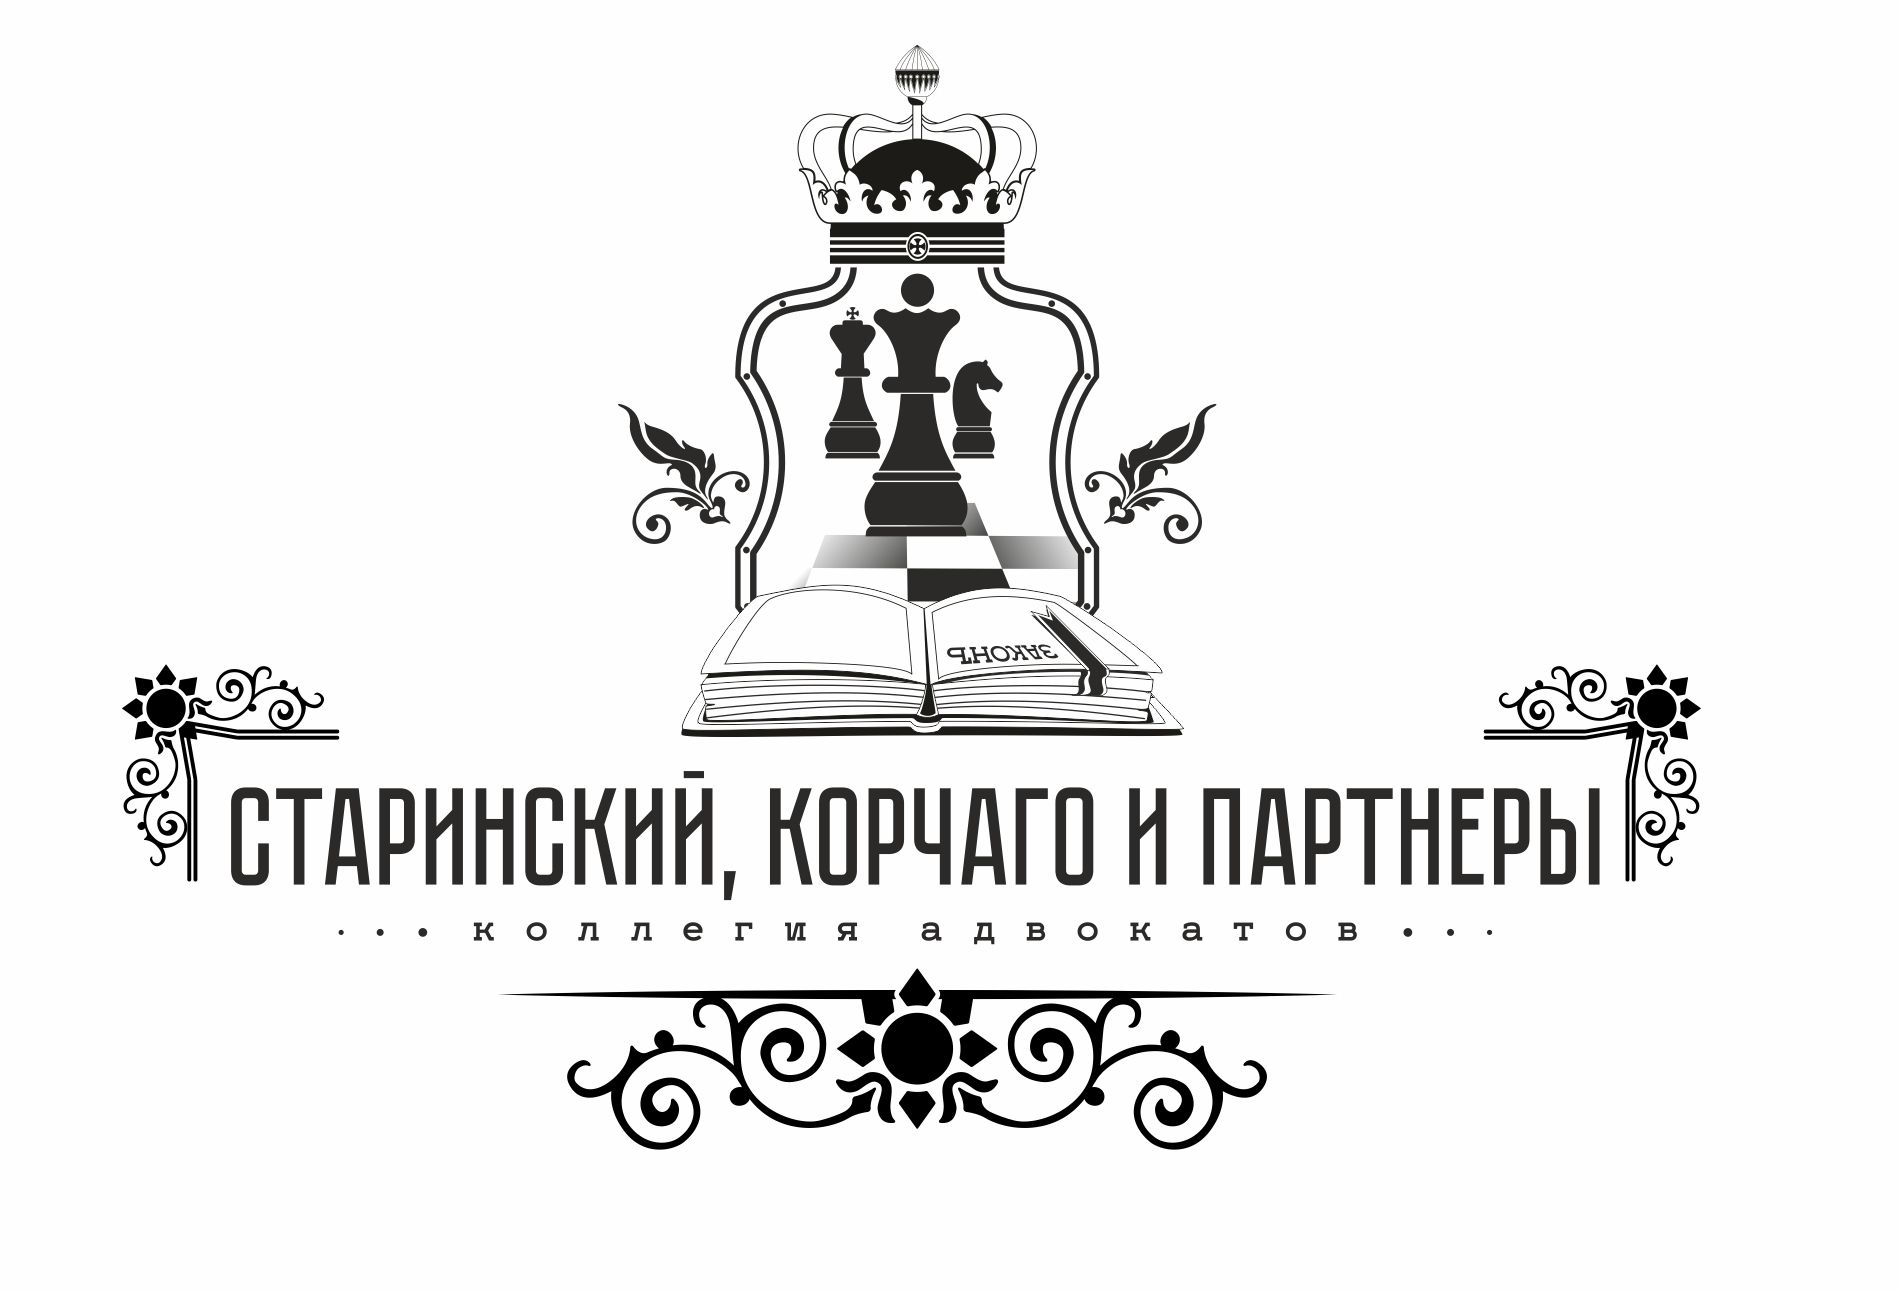 Коллегия адвокатов Старинский, Корчаго и партнеры - дизайнер hsochi